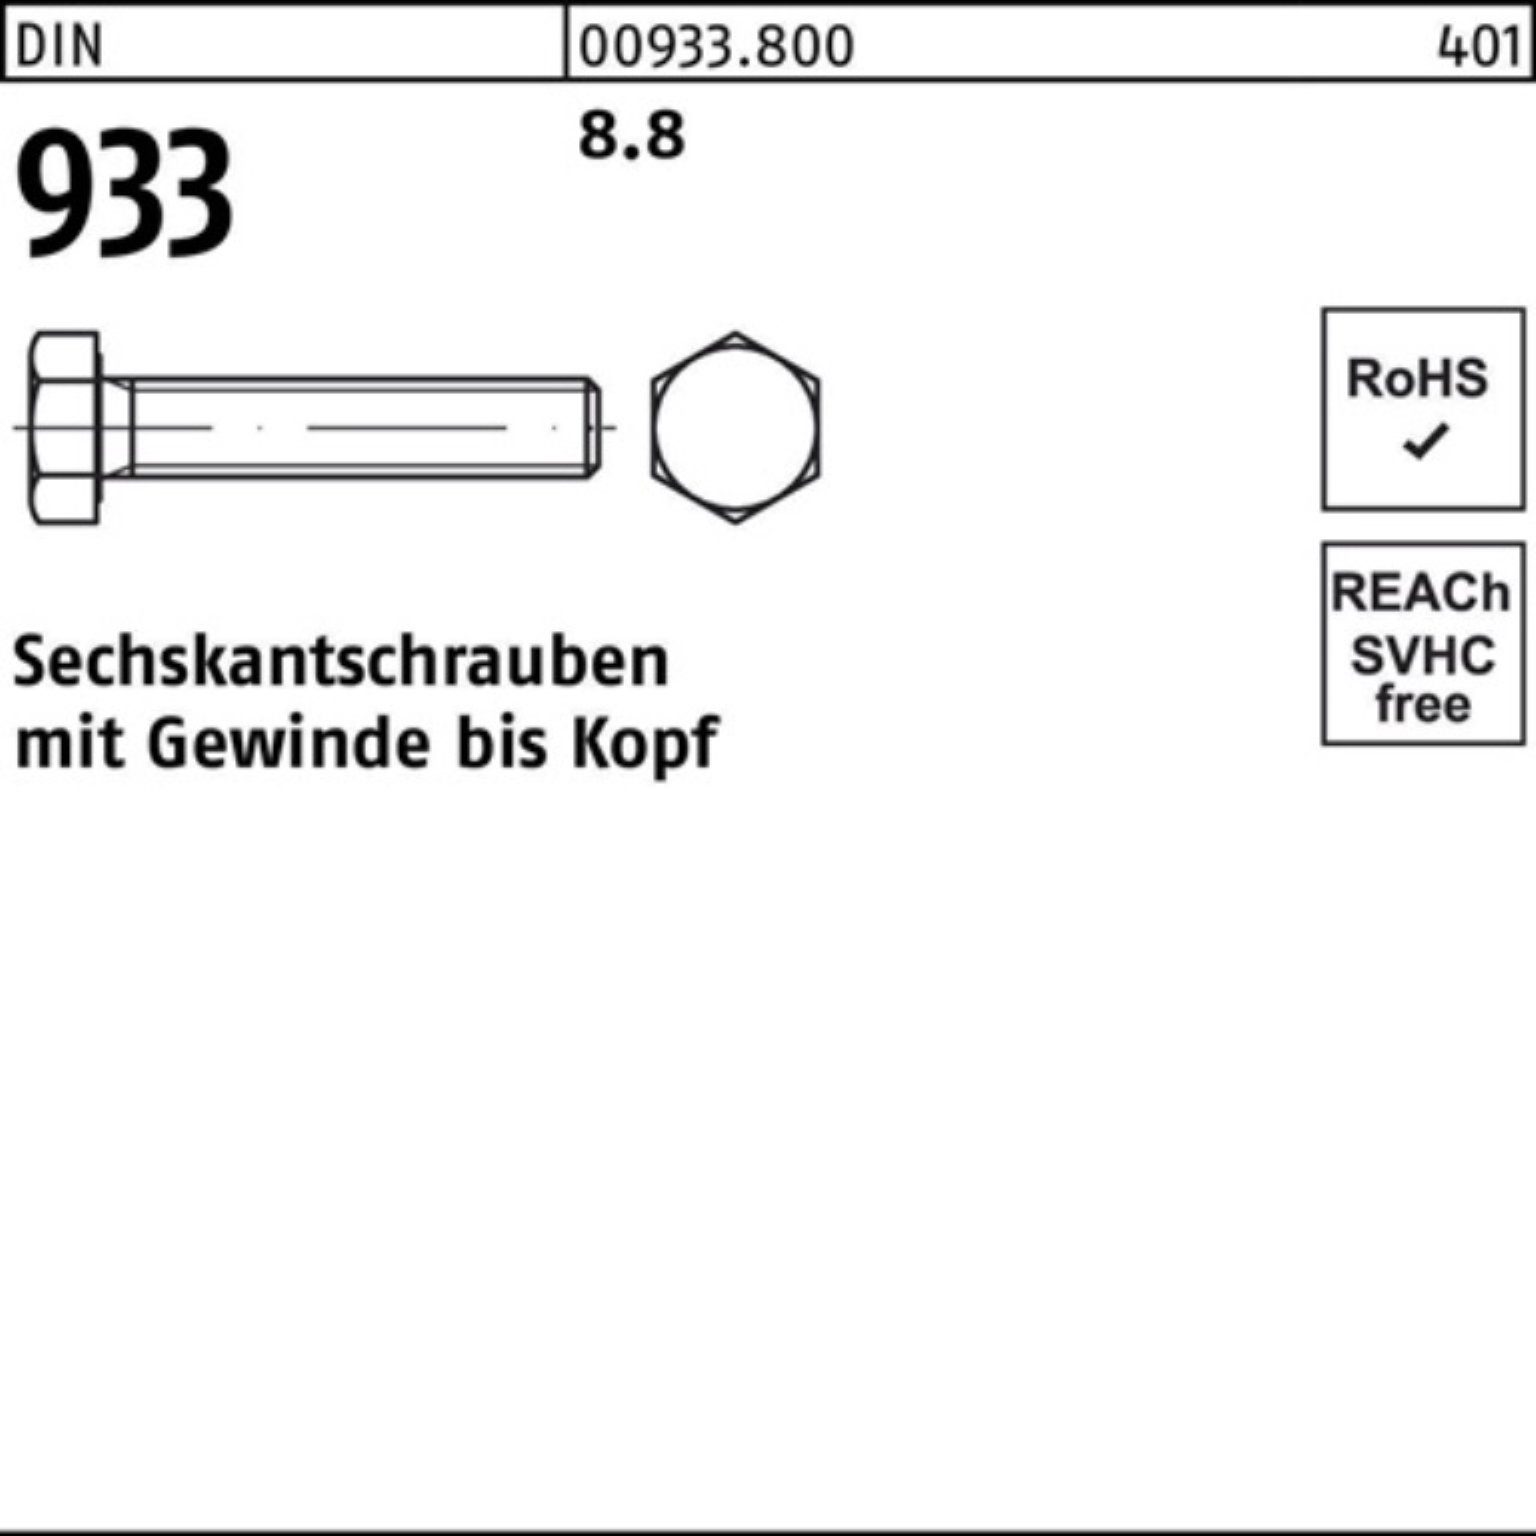 DIN 8 Sechskantschraube Stück Pack 1 8.8 Sechskantschraube 933 933 DIN 100er VG Reyher M36x 55